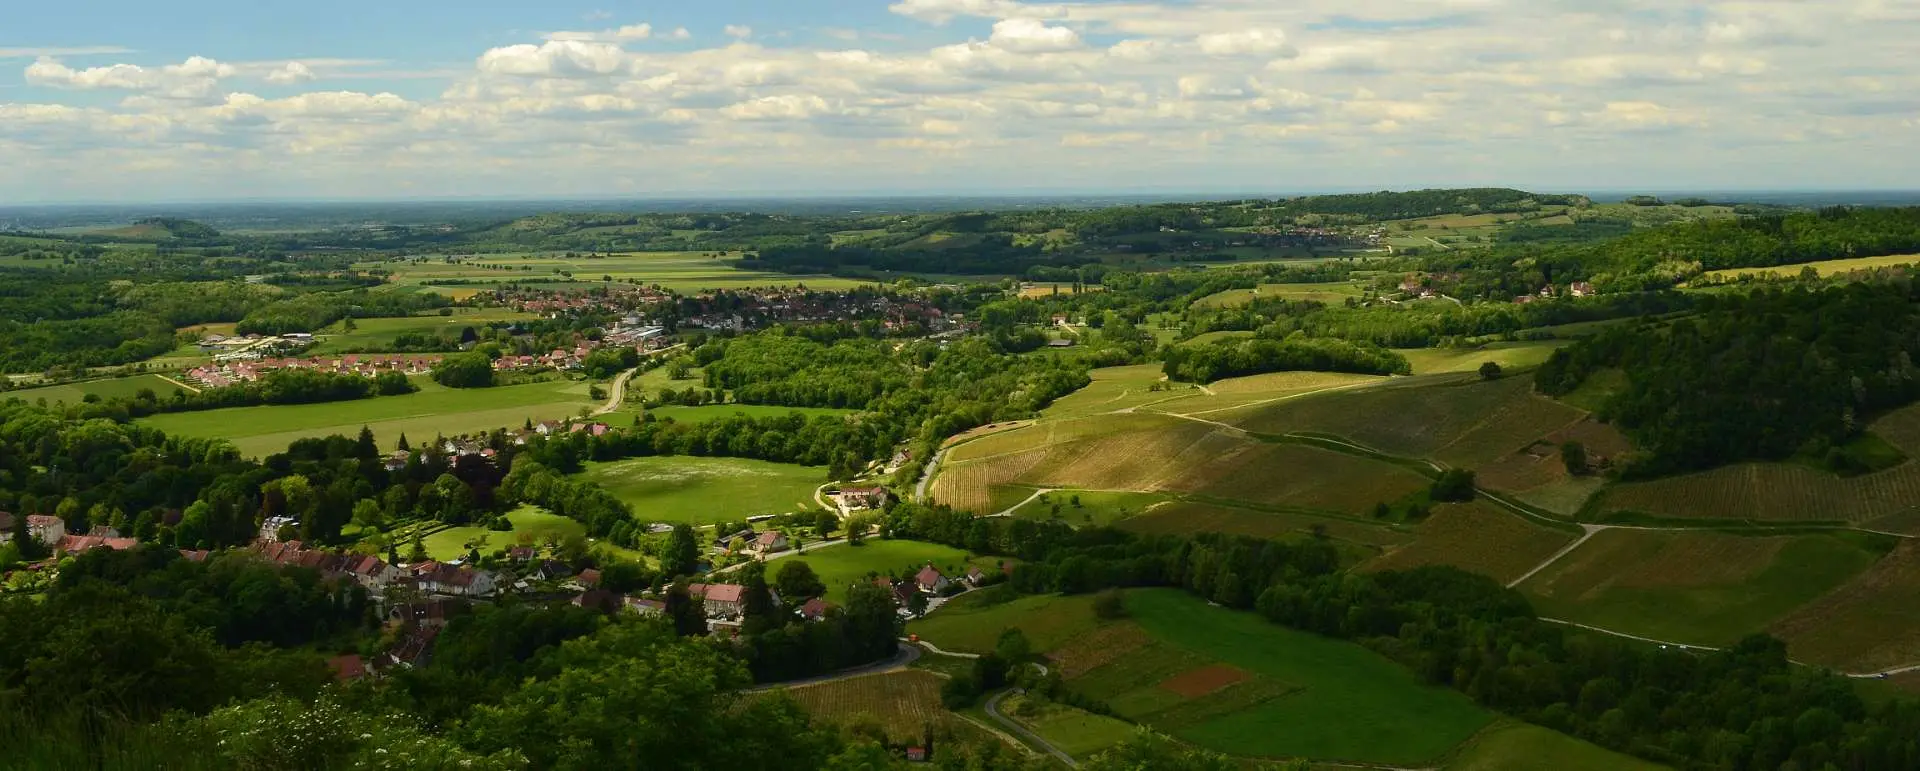 Bourgogne-Franche-Comté - the destination for hikers